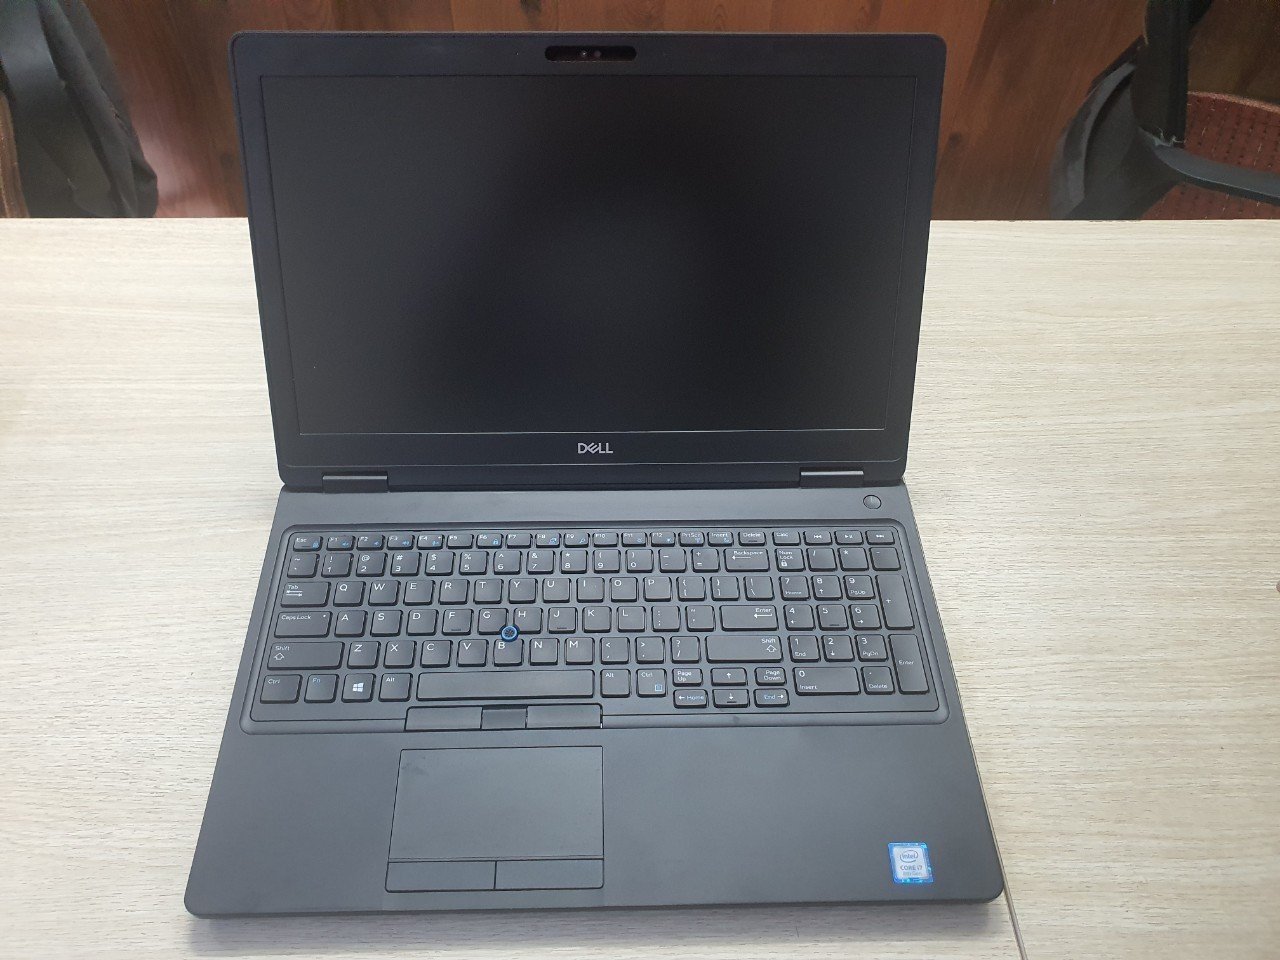 Lê Nguyễn PC - Địa Chỉ Tin Cậy Cho Laptop Cũ Giá Rẻ Tại Bình Dương – Laptop Dell i5/i7 chỉ từ 4 - Ảnh chính